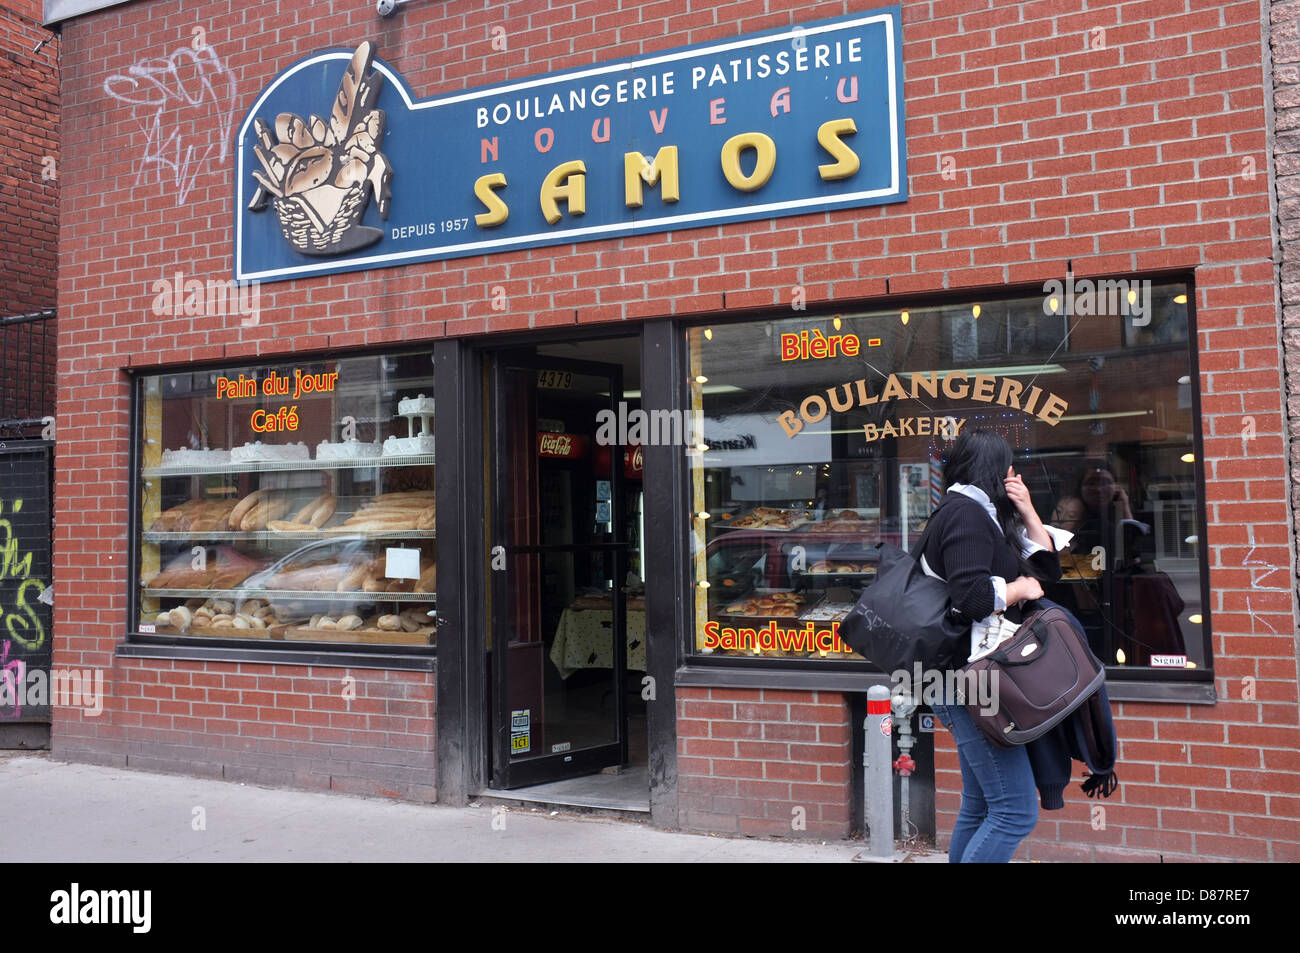 Samos ist eine kleine griechische Bäckerei befindet sich am Boulevard Saint-Laurent in Montreal, Quebec. Stockfoto